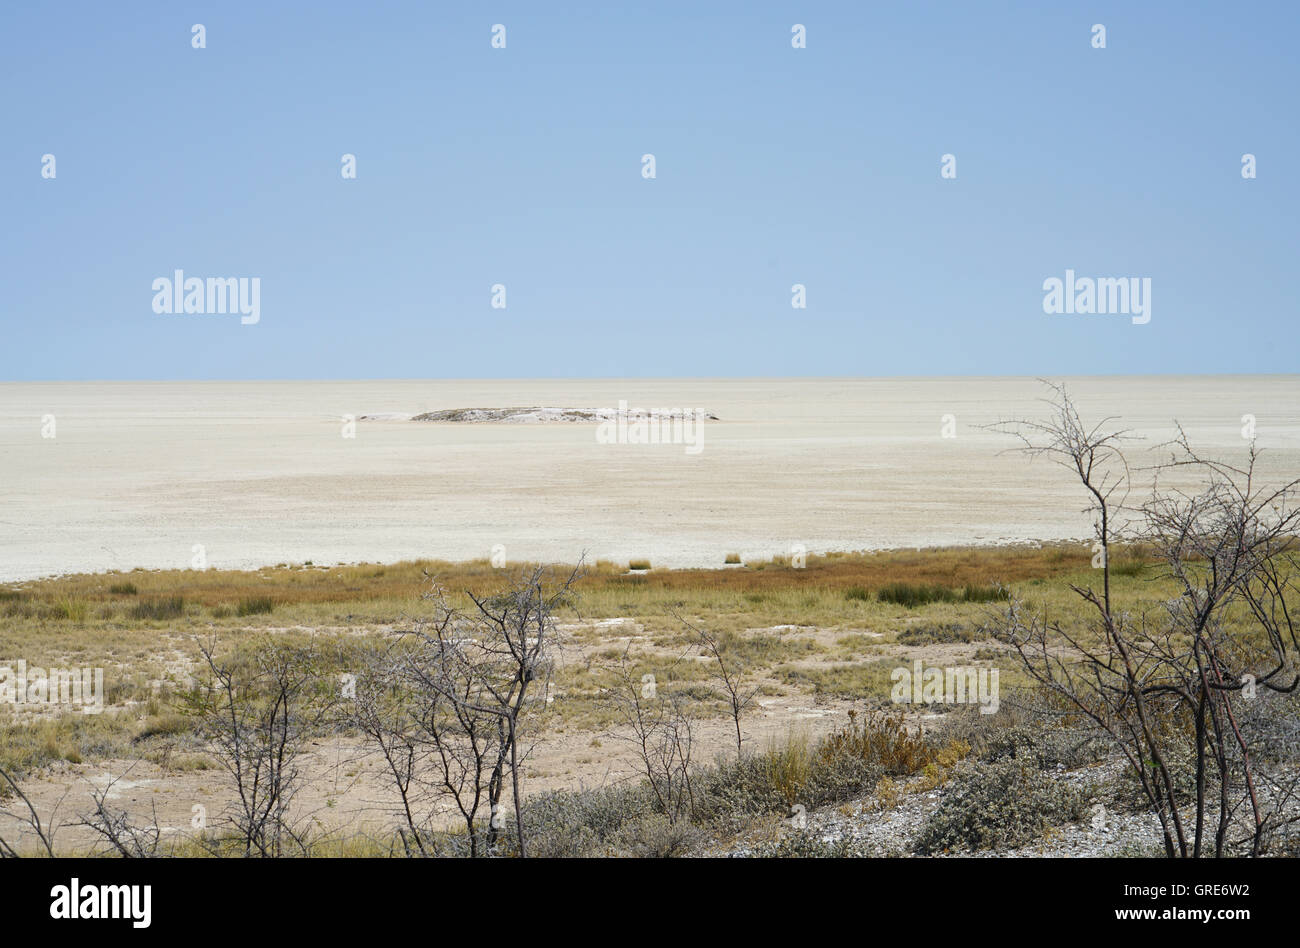 La sécheresse dans la cuvette d'Etosha, Namibie Banque D'Images